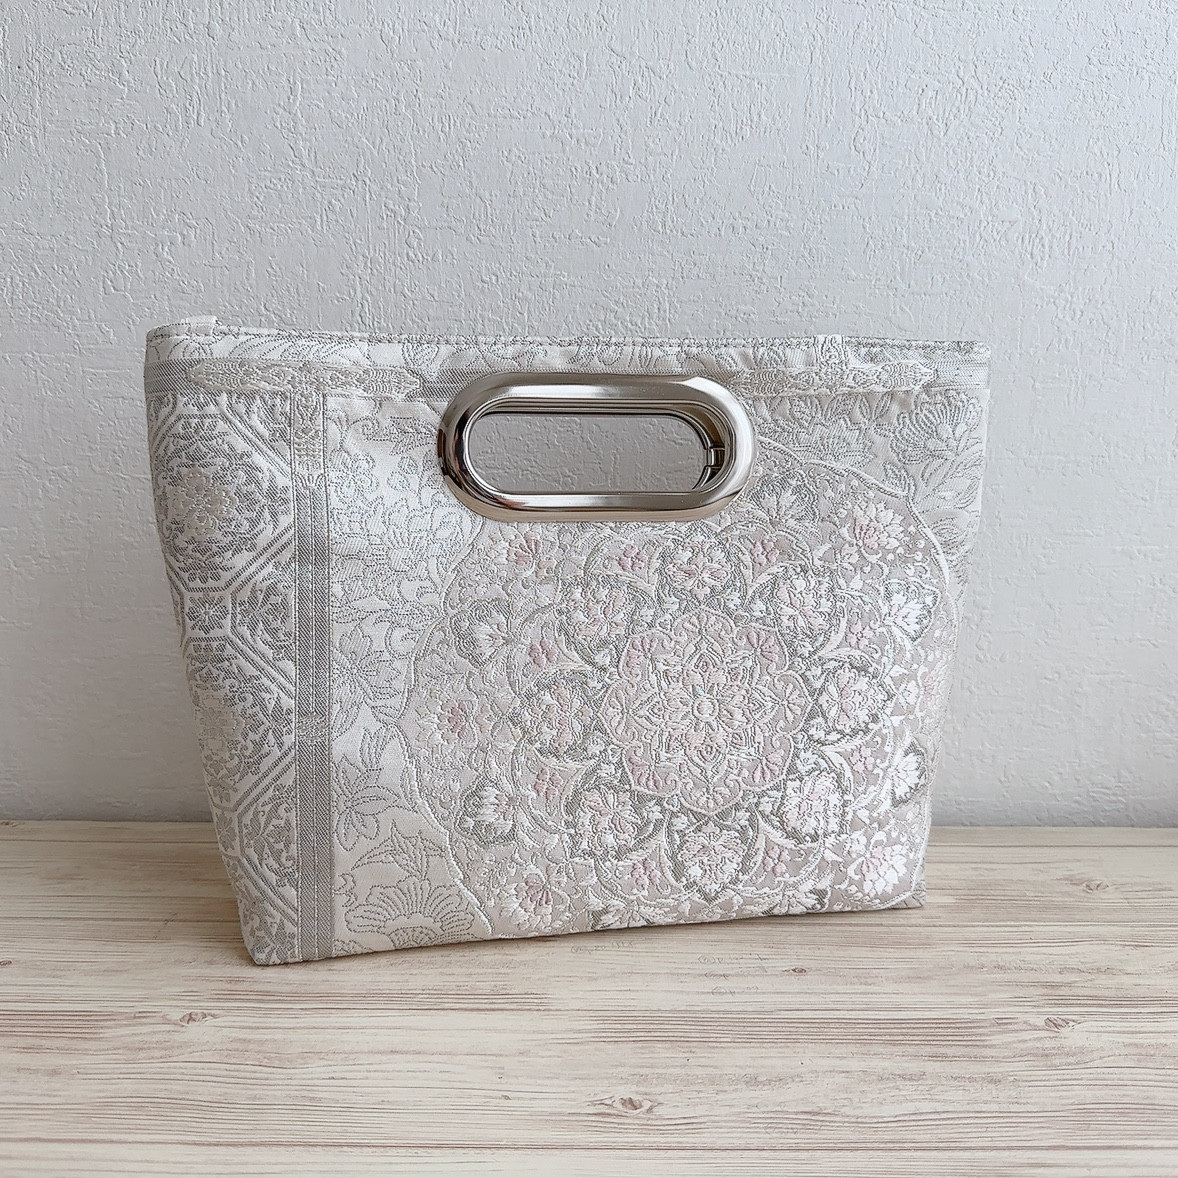 絹の帯から2wayバッグ 桜色のプラチナ箔宝飾華紋更紗文柄 帯リメイク